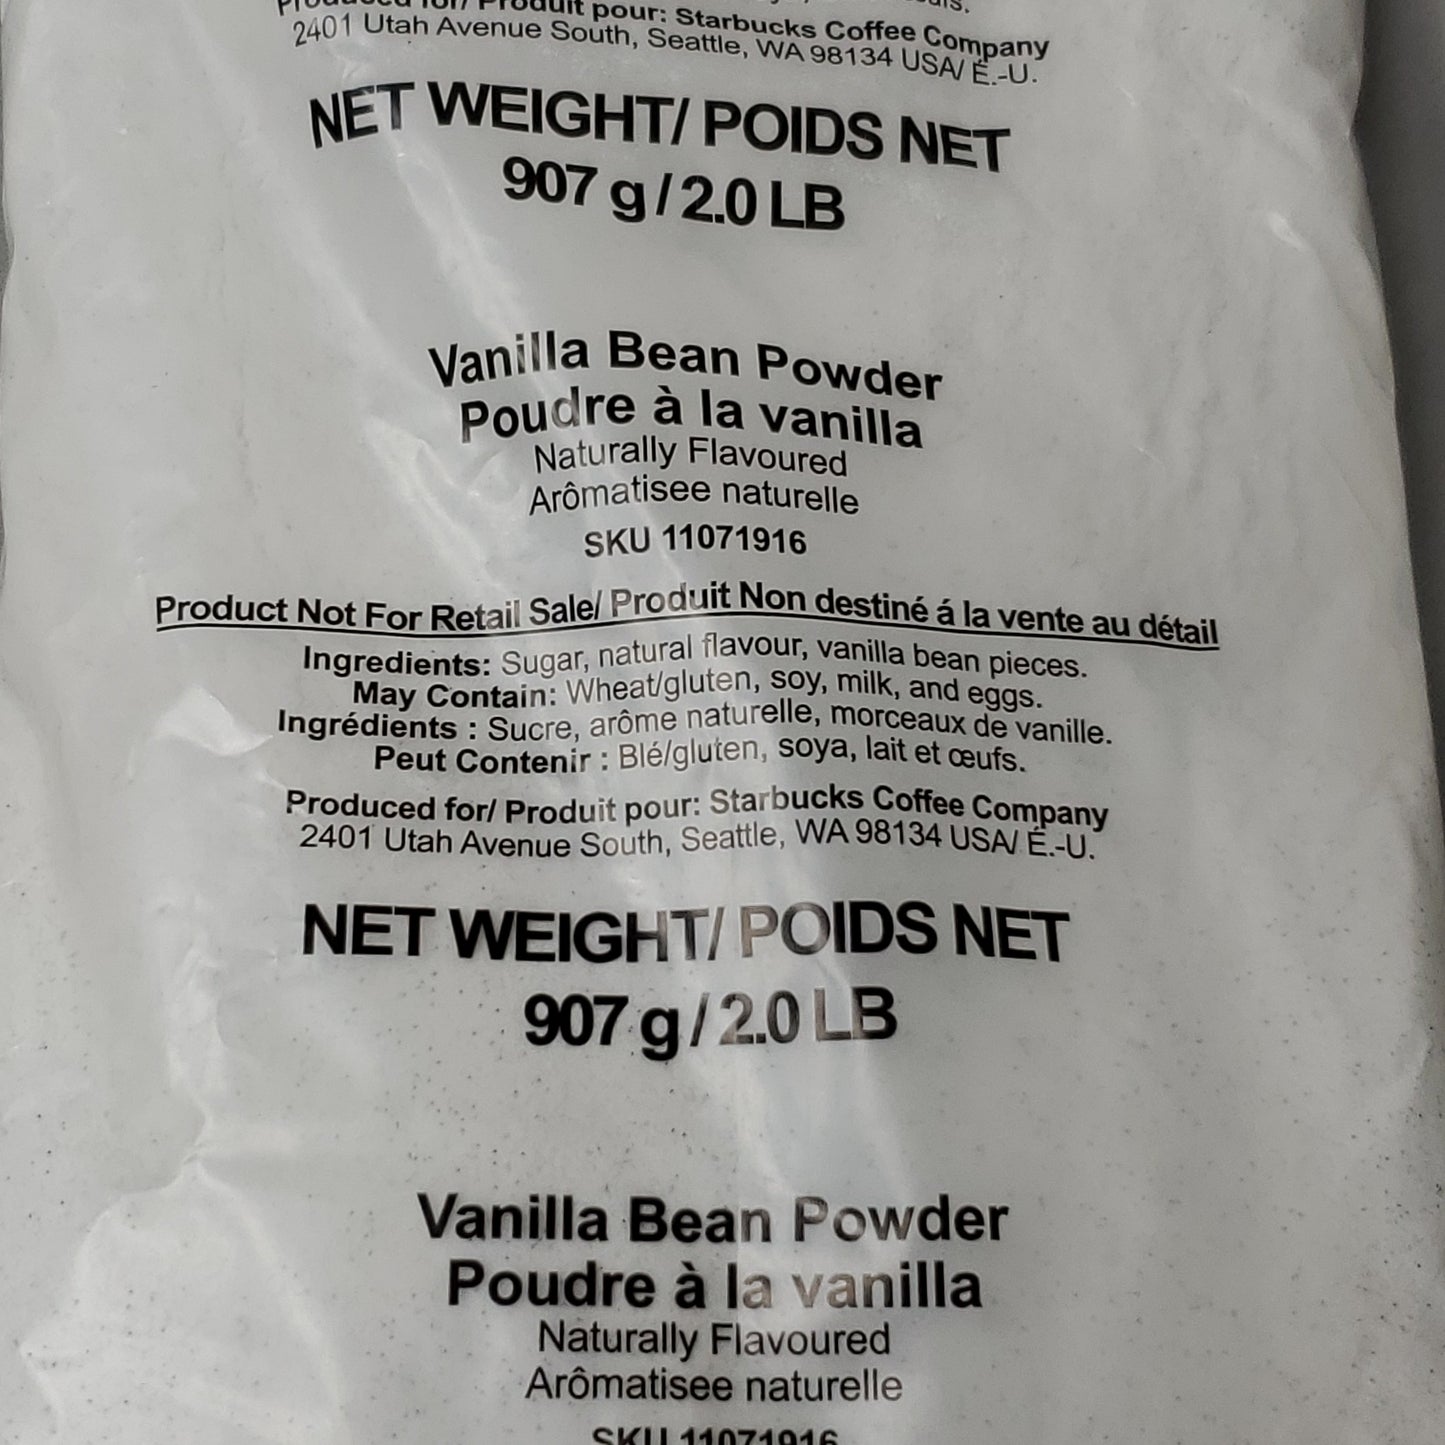 (12 PACK) STARBUCKS Vanilla Bean Powder Each 2 lb/bags BB 05/24 (AS-IS)